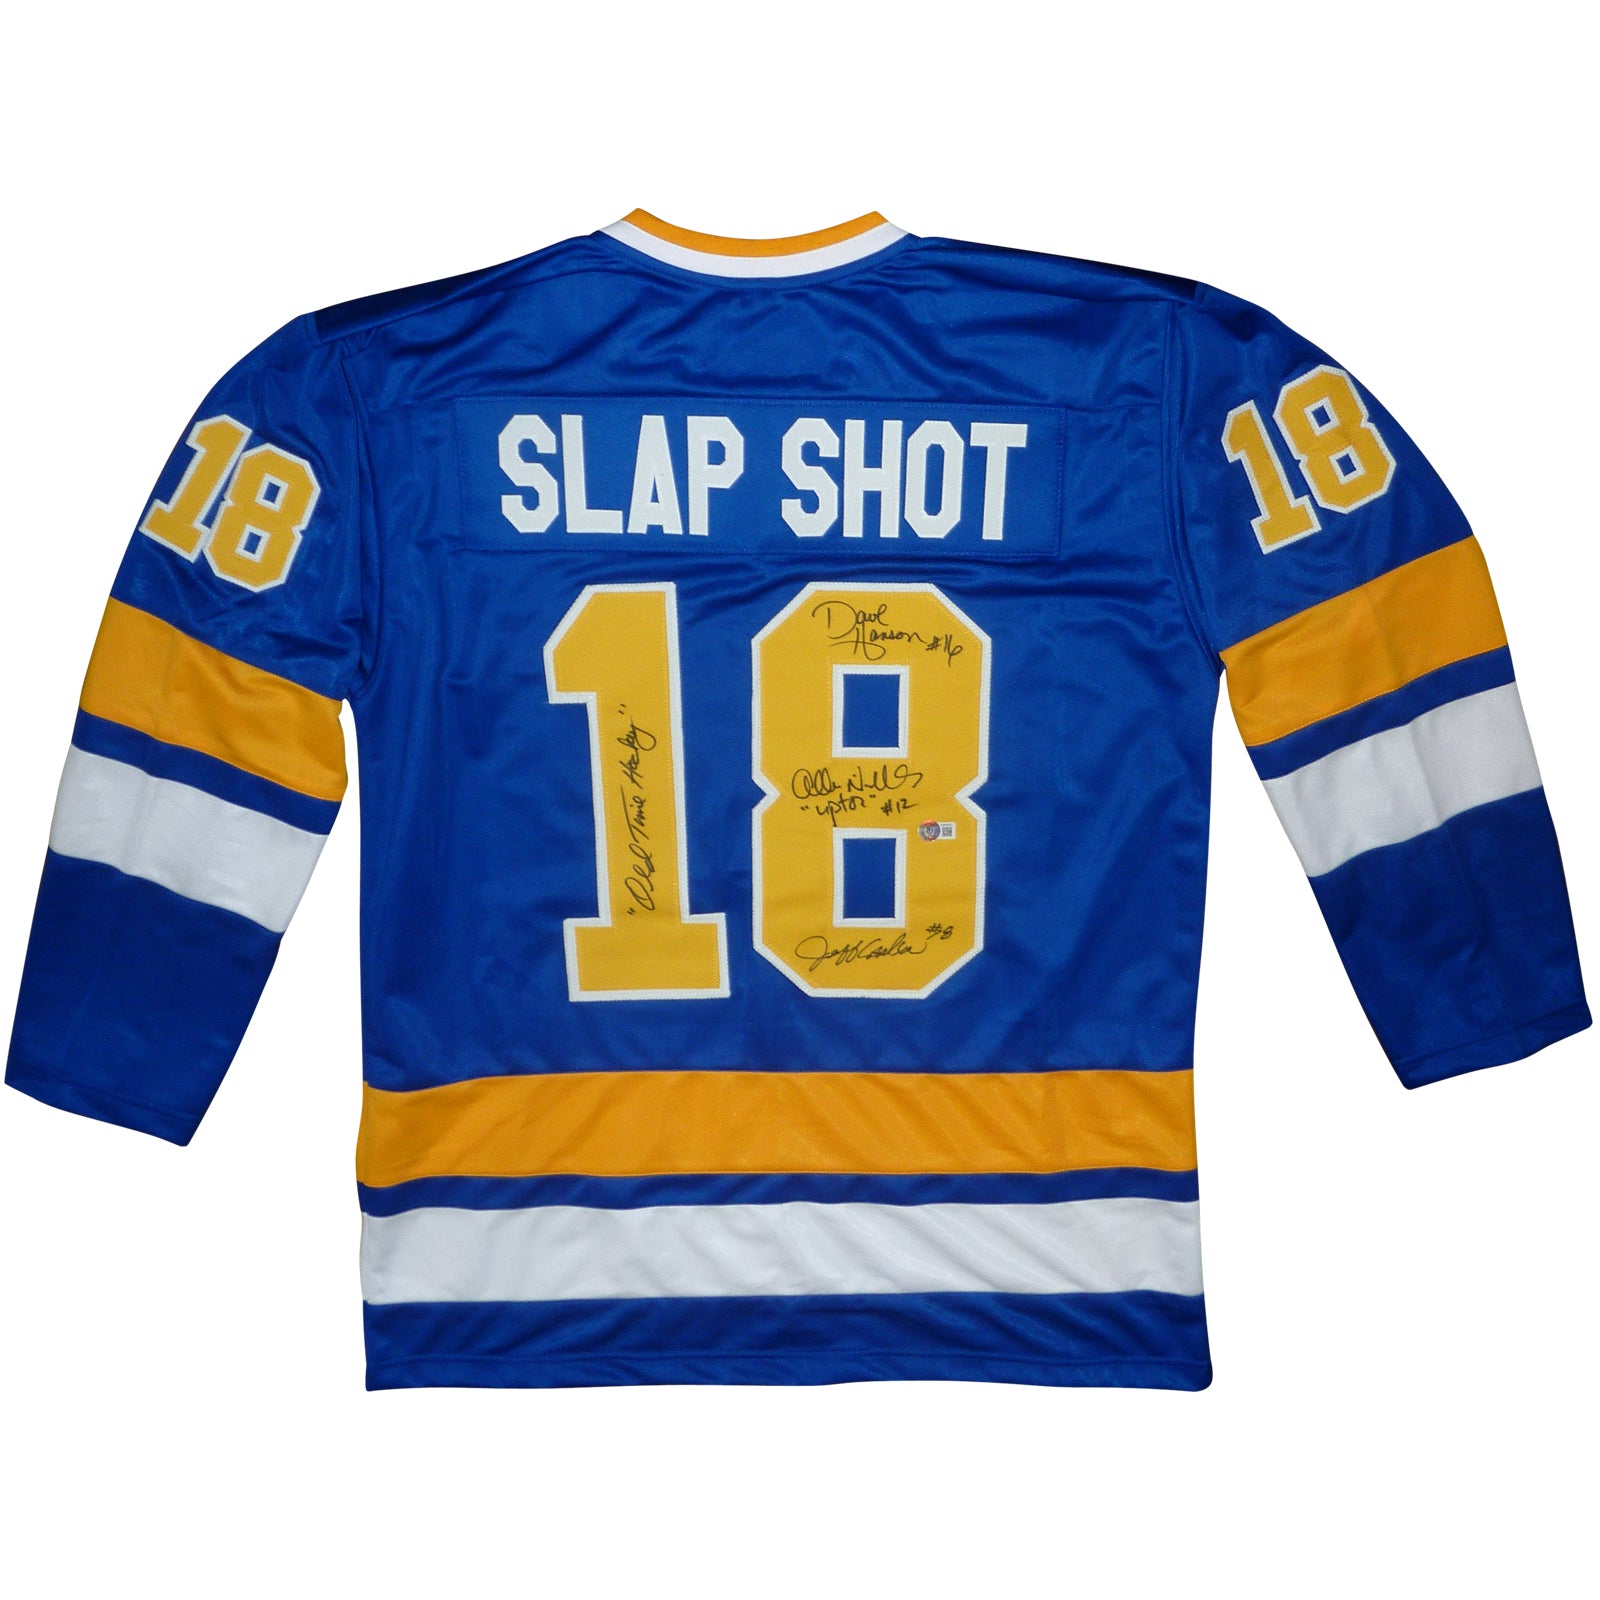 Shop Cool Hockey Shirts, Slap Shot T-Shirt